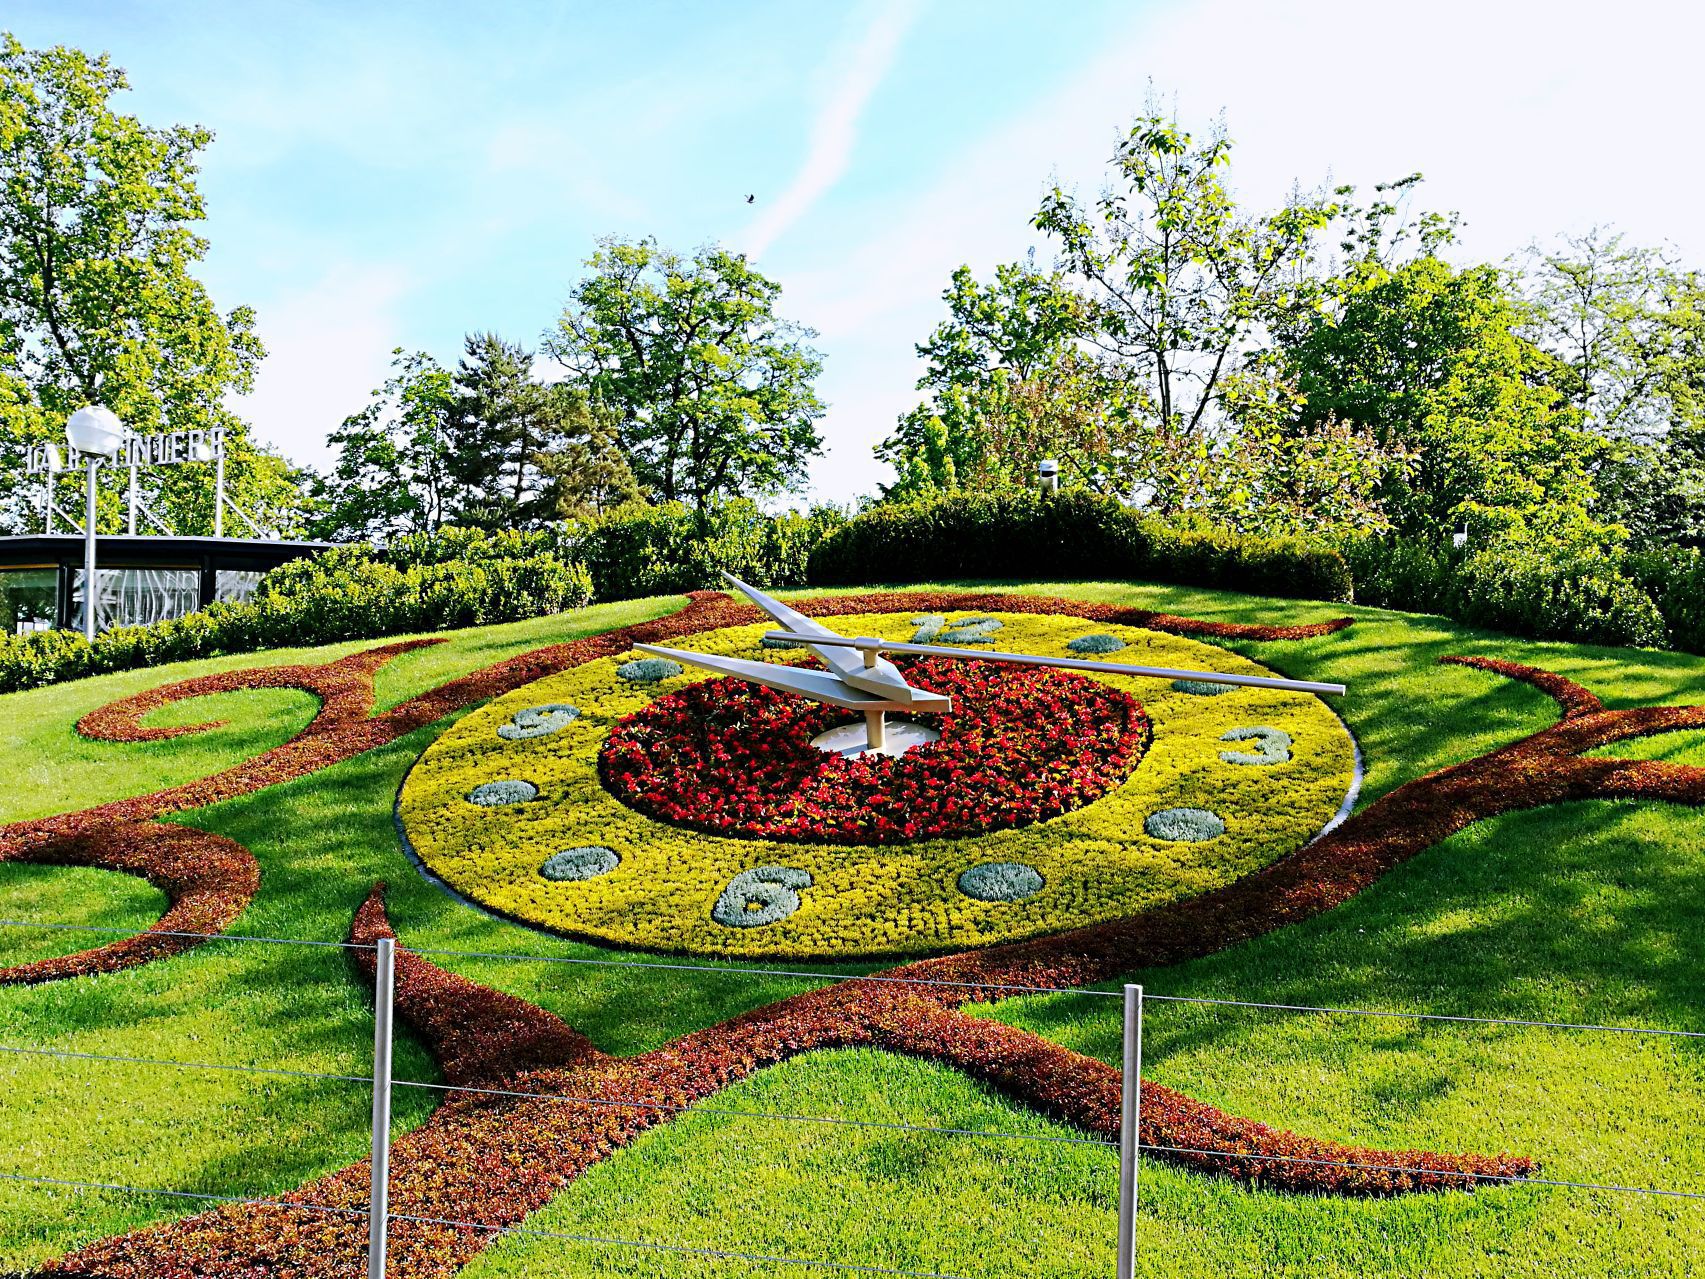 영국 정원에 위치한 관광명소인 꽃시계는 6500여종의 꽃으로 구성되어 있습니다